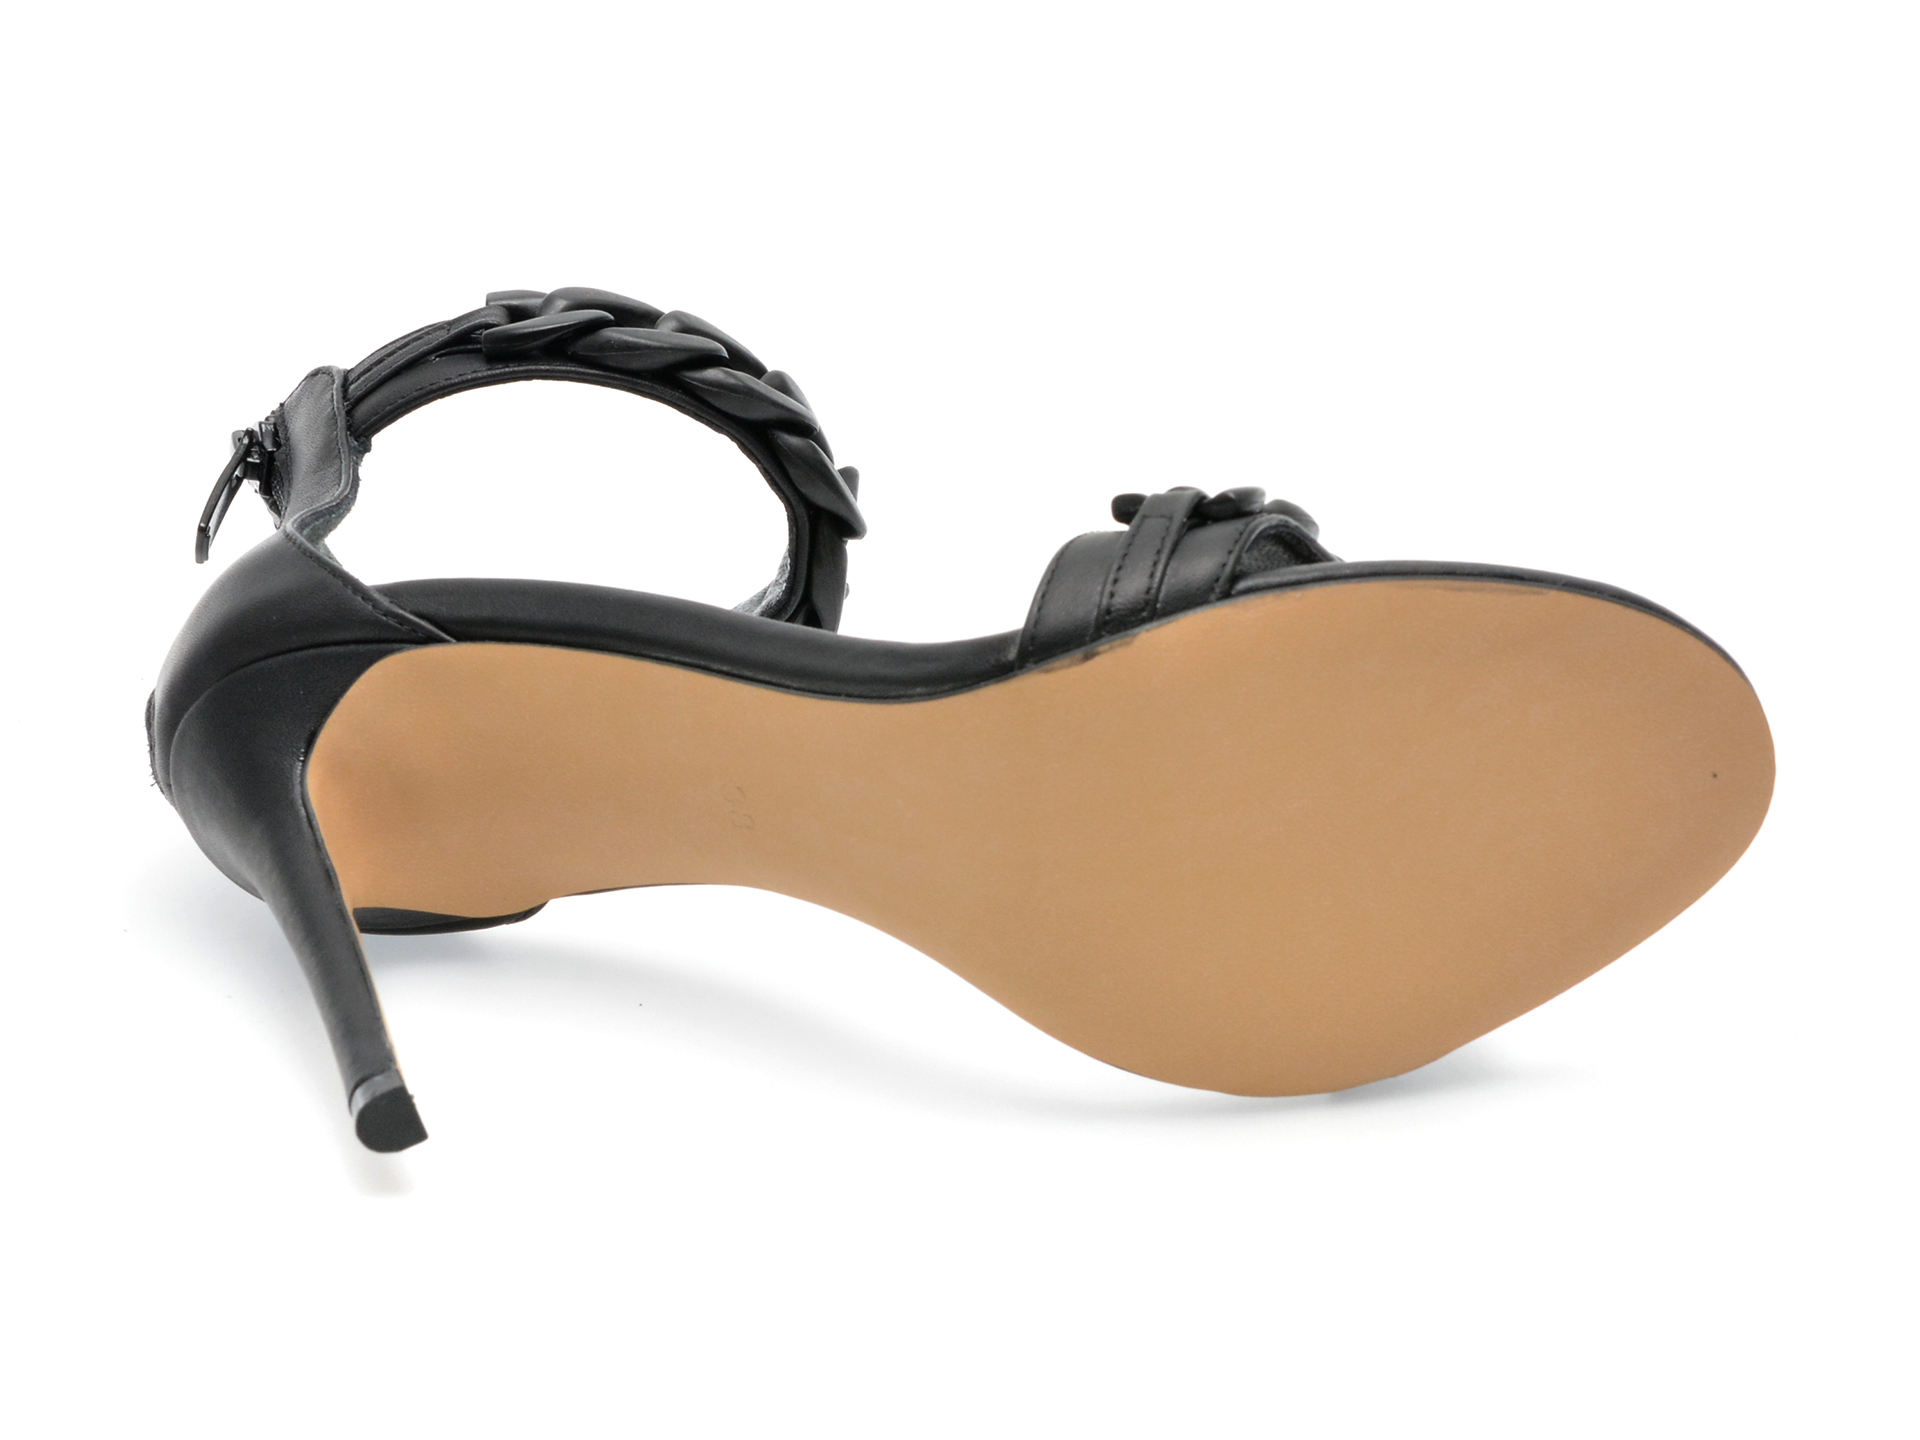 Sandale EPICA negre, 401D20, din piele naturala